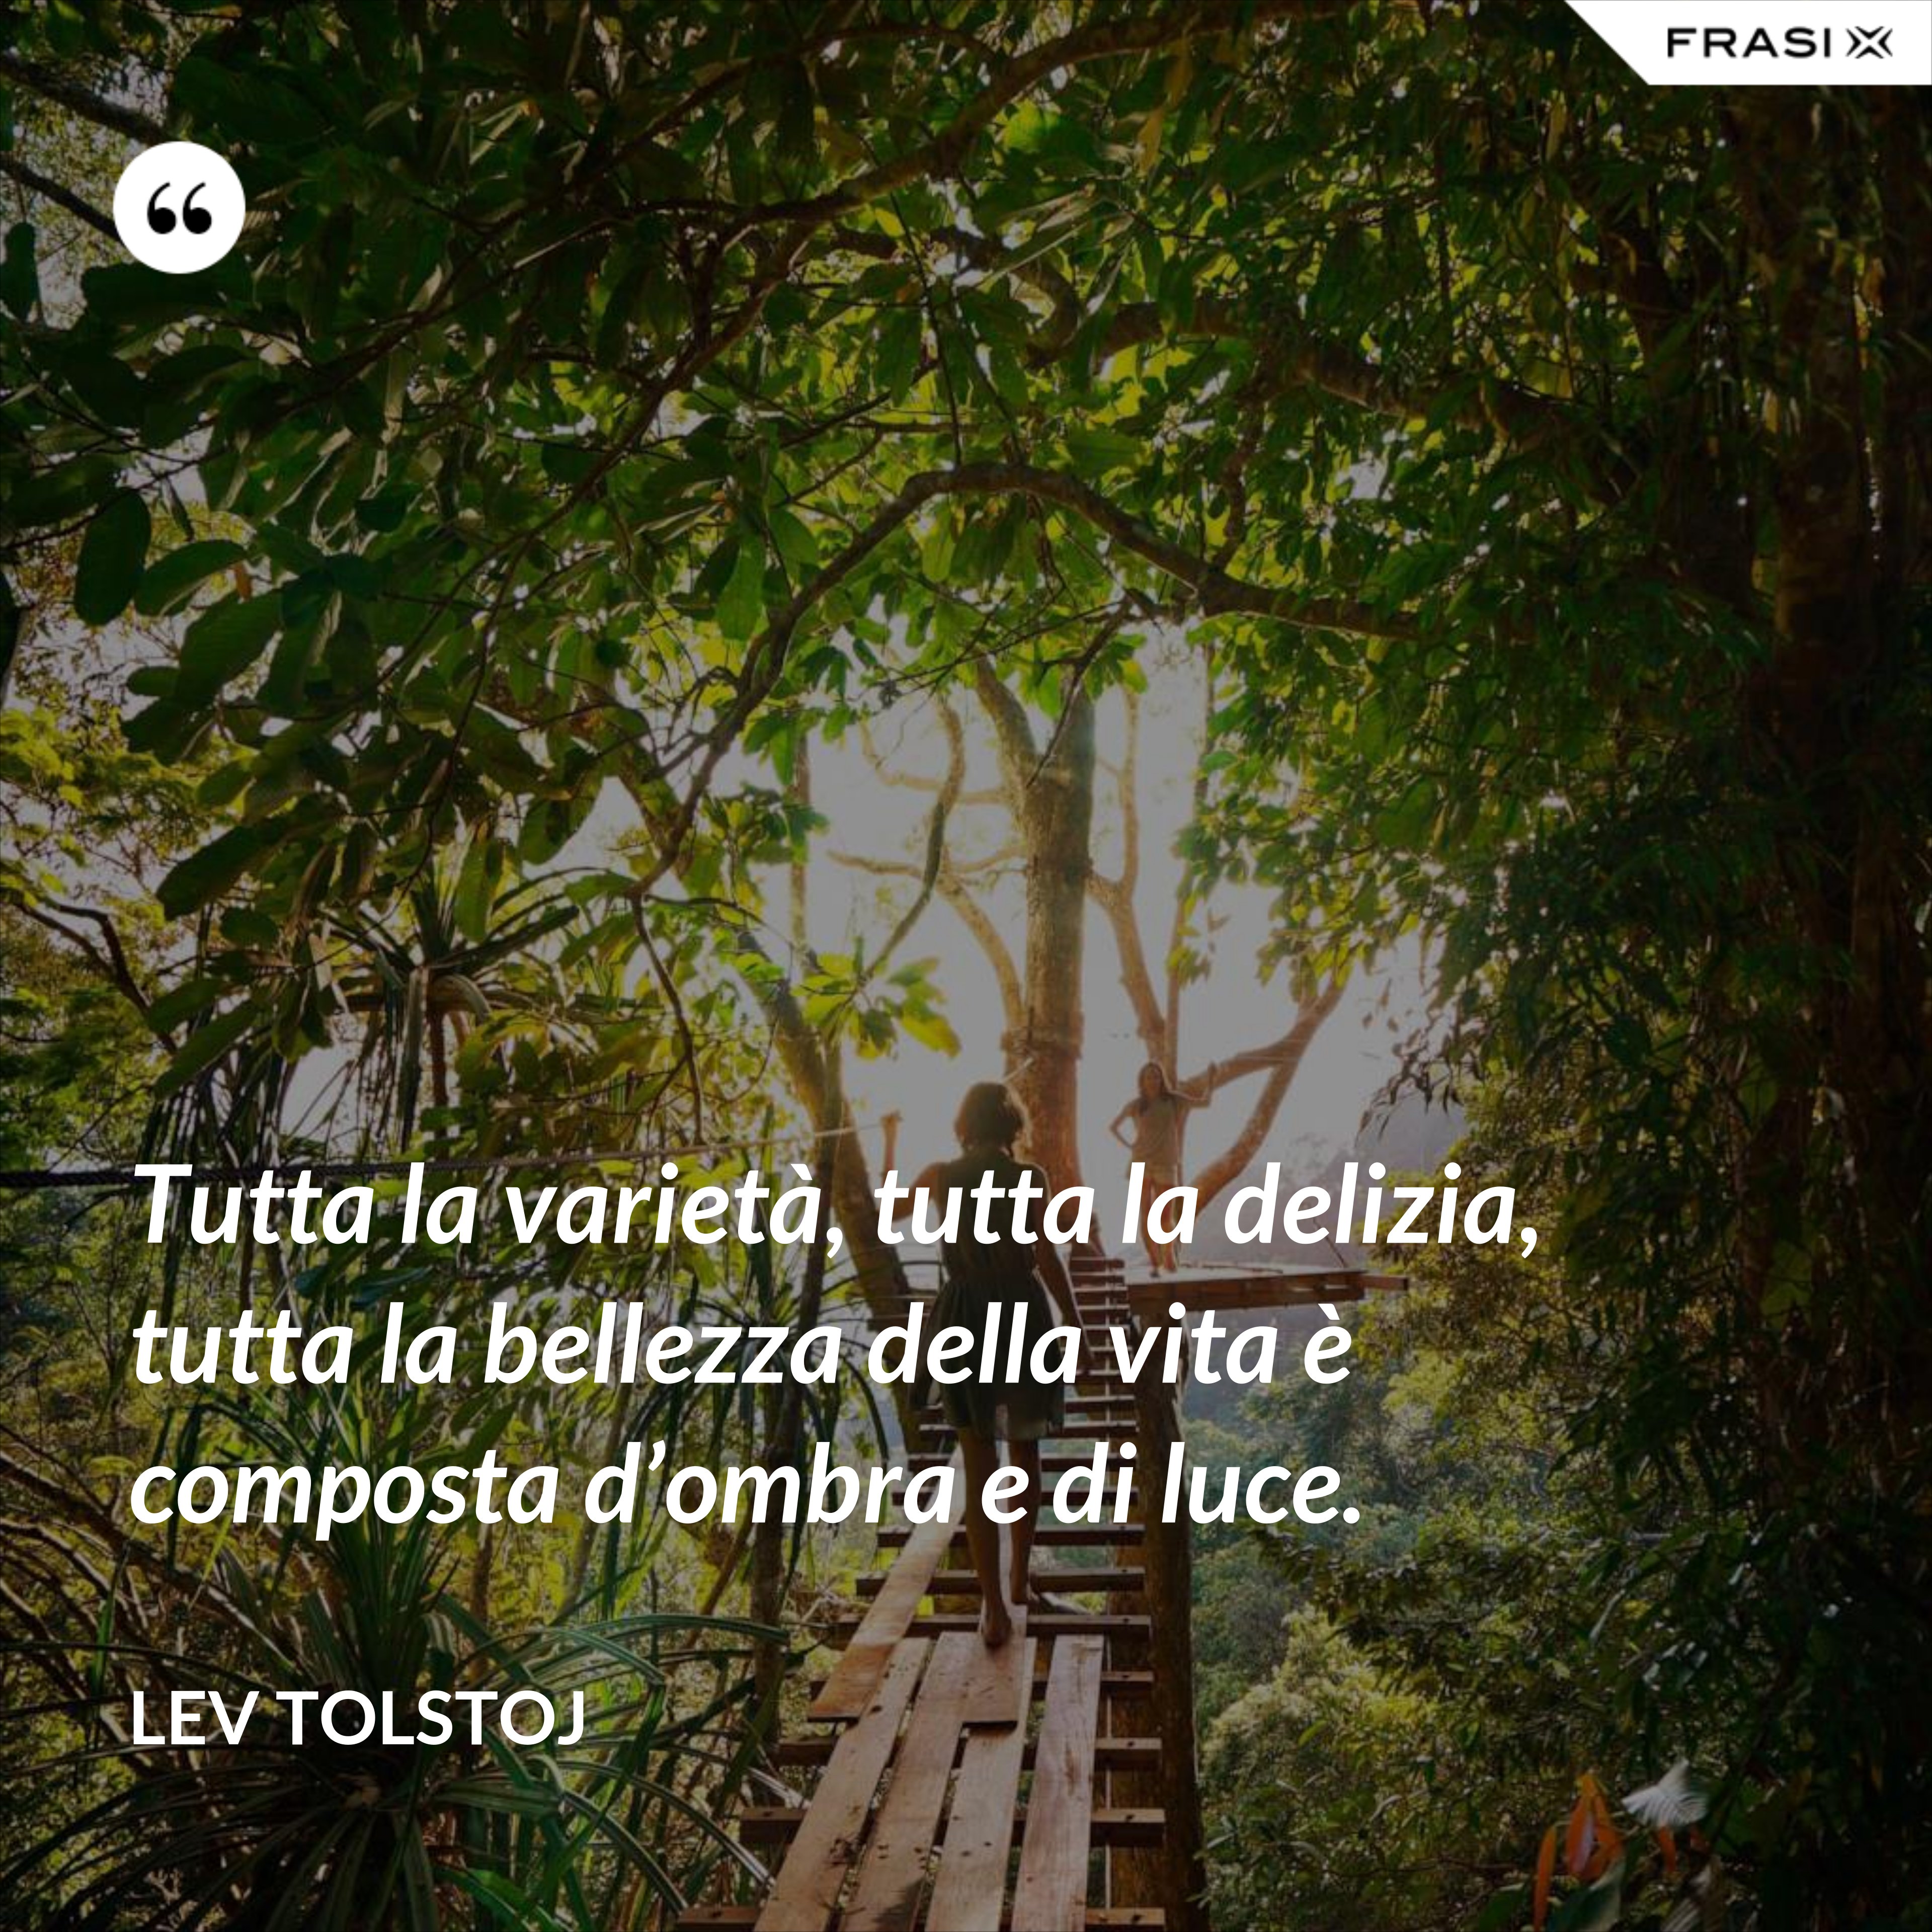 Tutta la varietà, tutta la delizia, tutta la bellezza della vita è composta d’ombra e di luce. - Lev Tolstoj